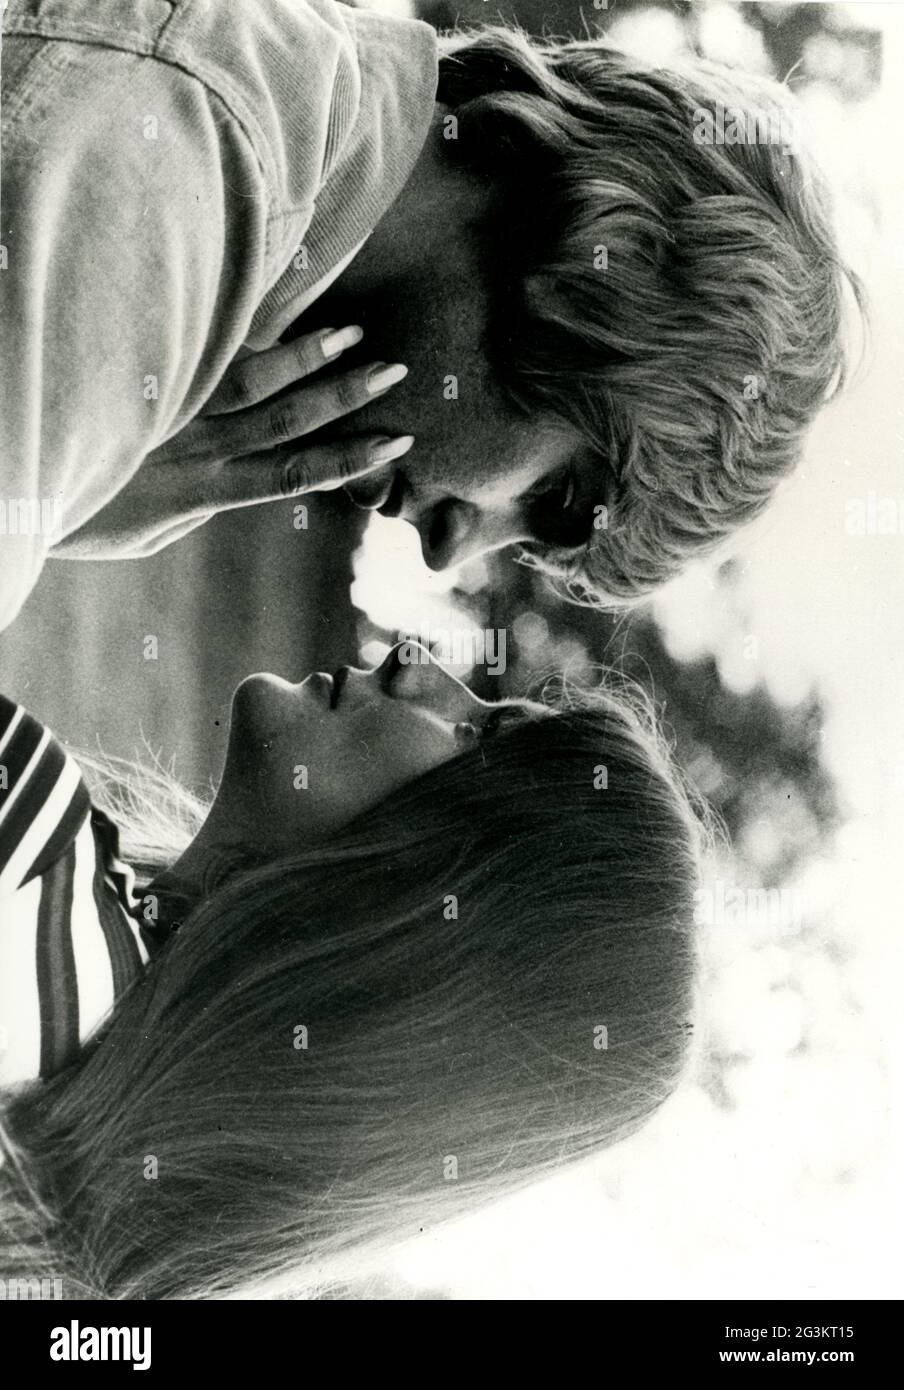 Menschen, Paare, Liebhaber / Romantik, Paare, die einander betrachten, 70er Jahre, ZUSÄTZLICHE-RIGHTS-CLEARANCE-INFO-NOT-AVAILABLE Stockfoto